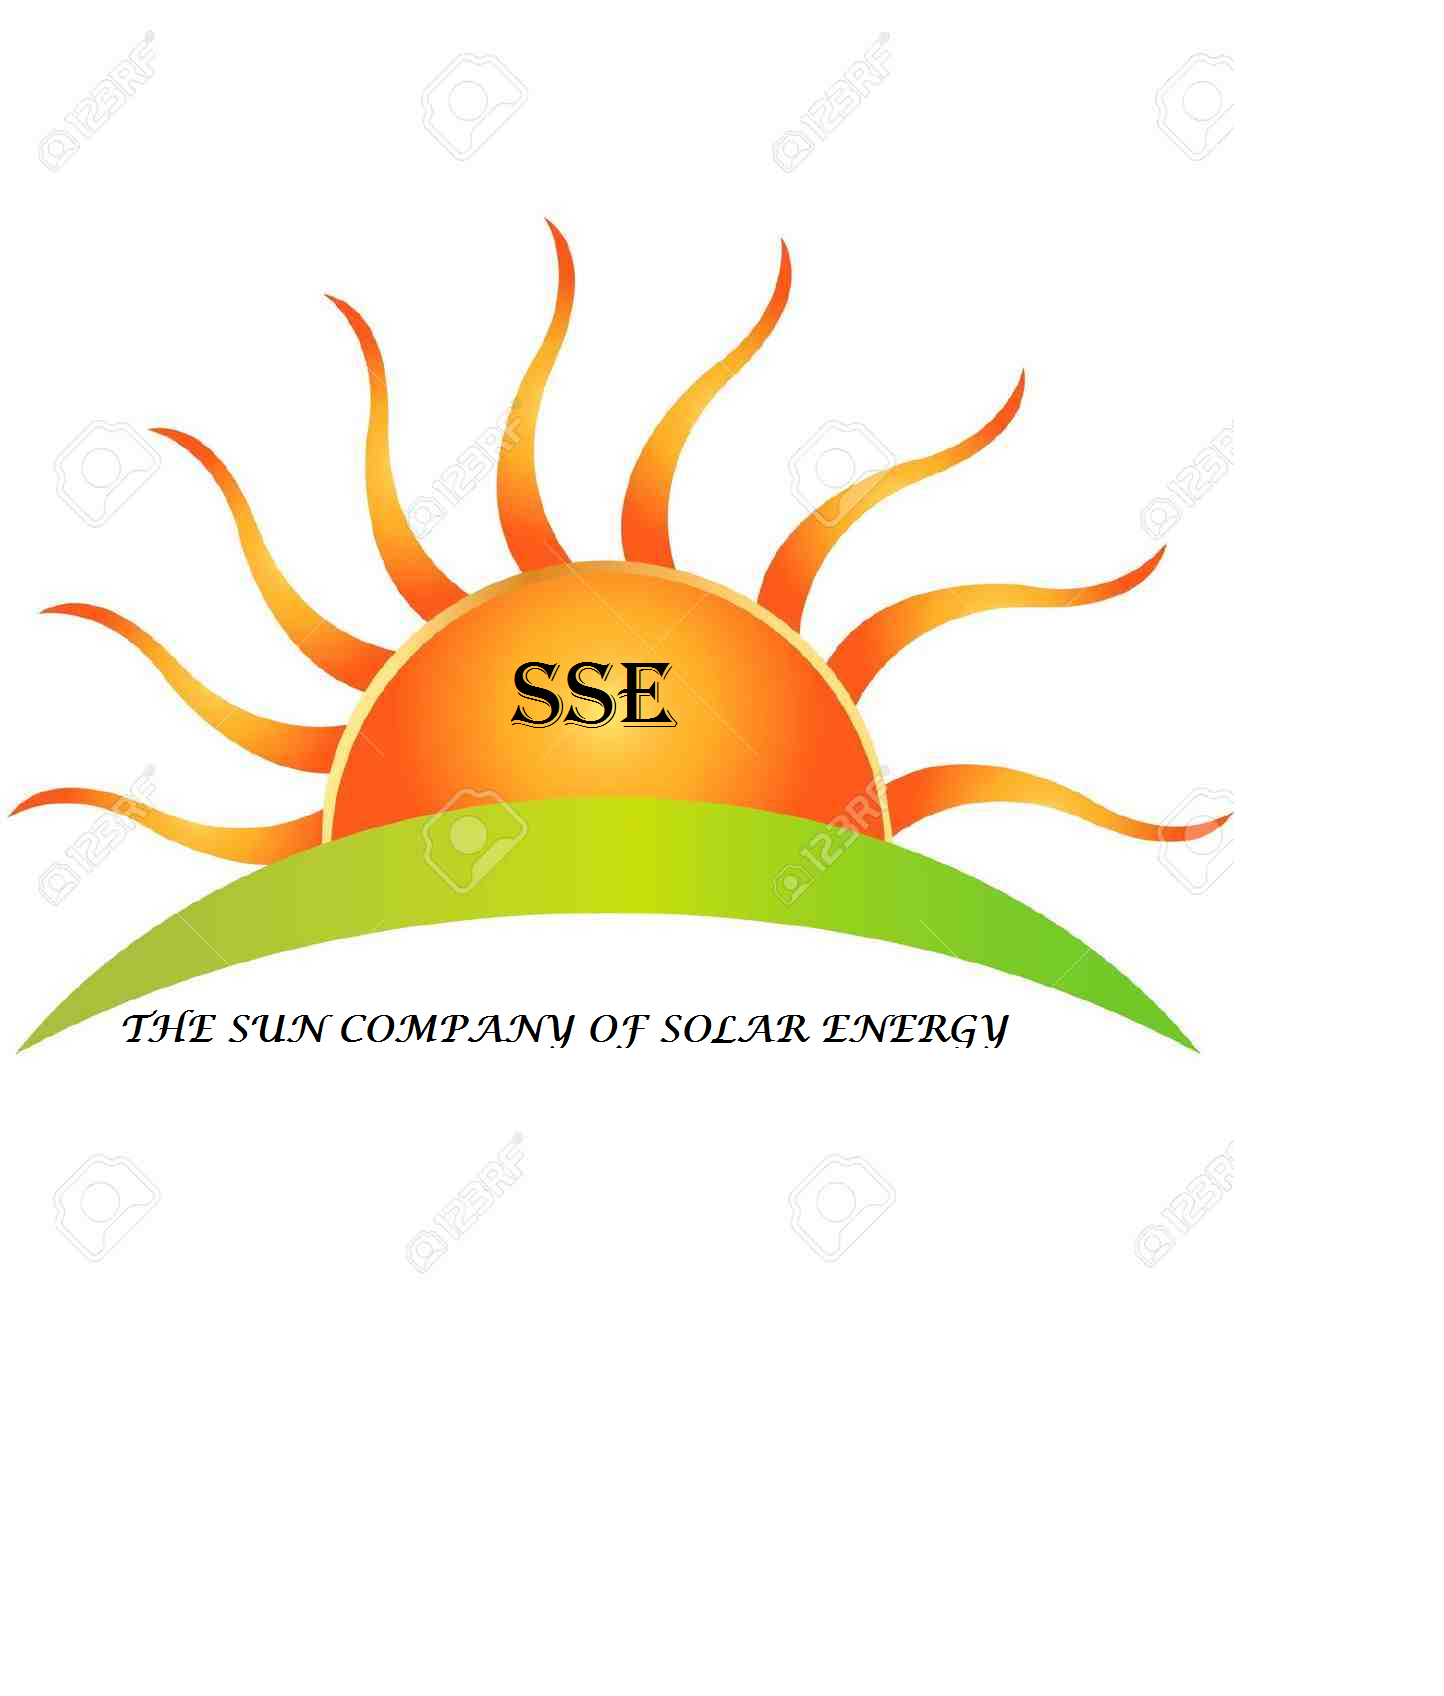 شركة الشمس لأعمال الطاقة الشمسية وشبكات الرى الزراعى